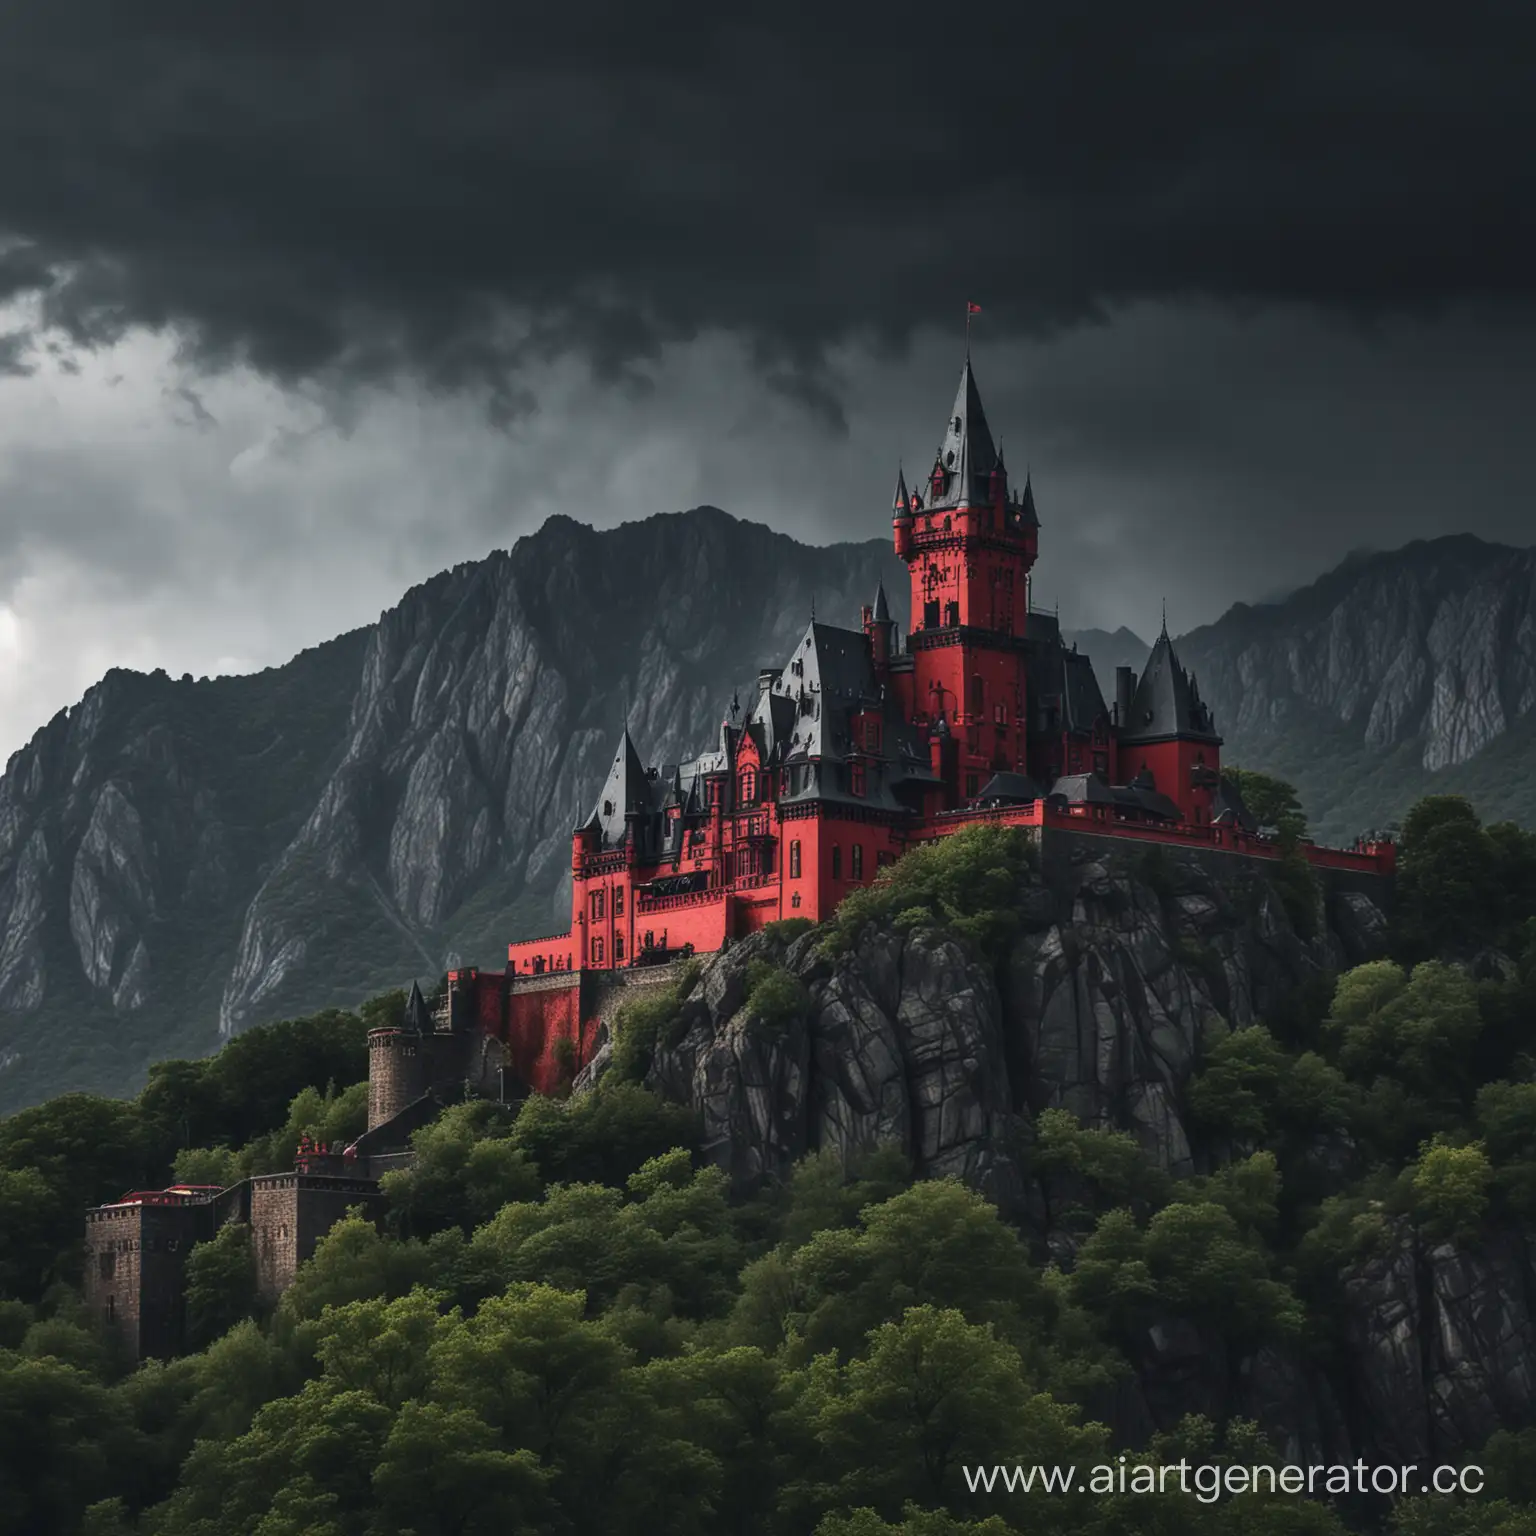 Поместье, похожее на замок в чёрно-красных оттенках на горно-холмистой местности в надвигающуюся грозу.